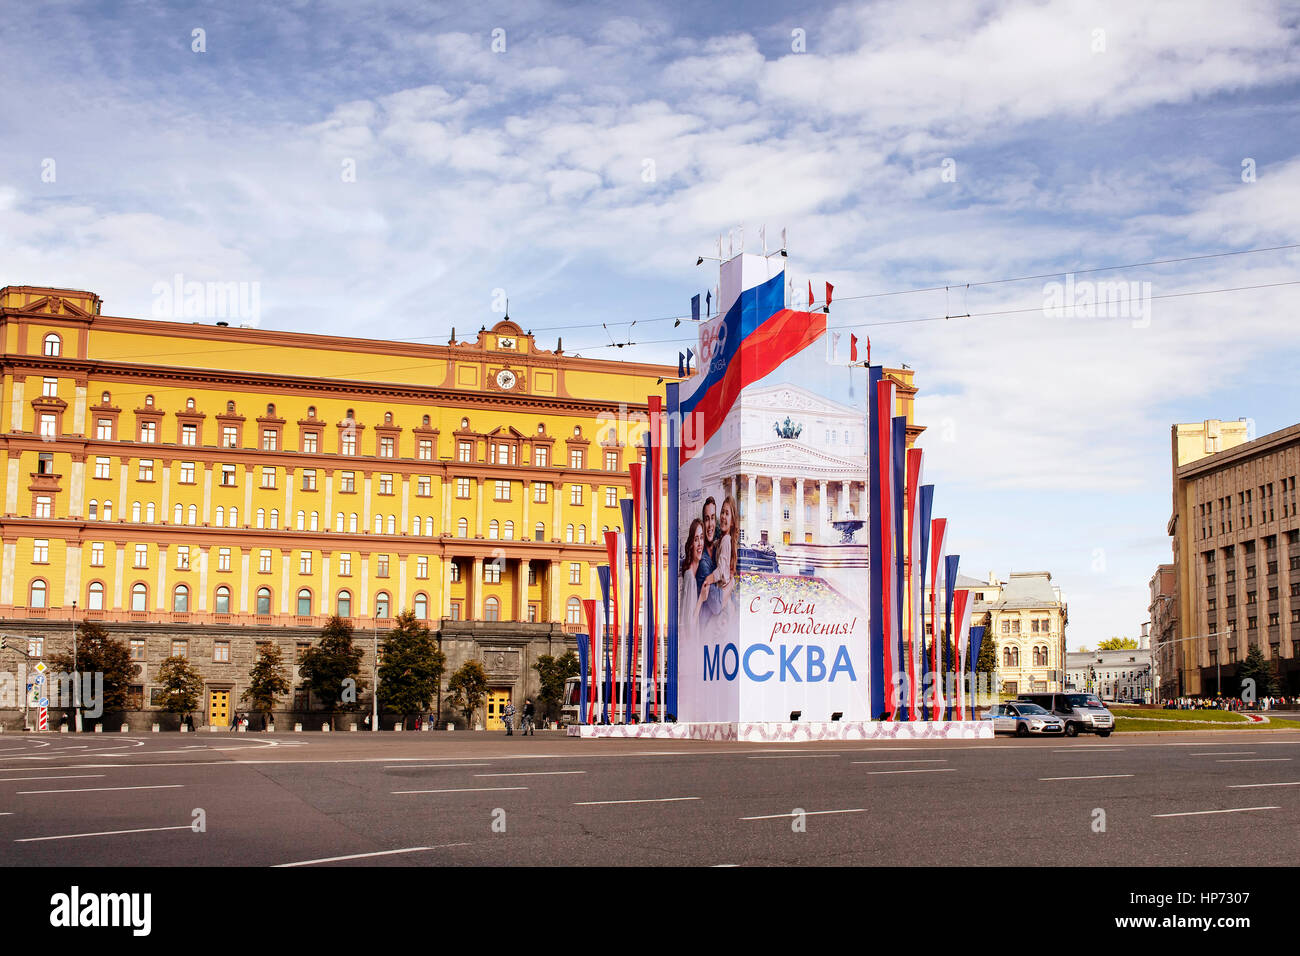 Ansicht der Lubjanka-Platz. Hauptsitz des KGB in Russland ist in den Hintergrund. Advertisiment der Tag der Stadt Moskau befindet sich im Herzen der Region. Stockfoto